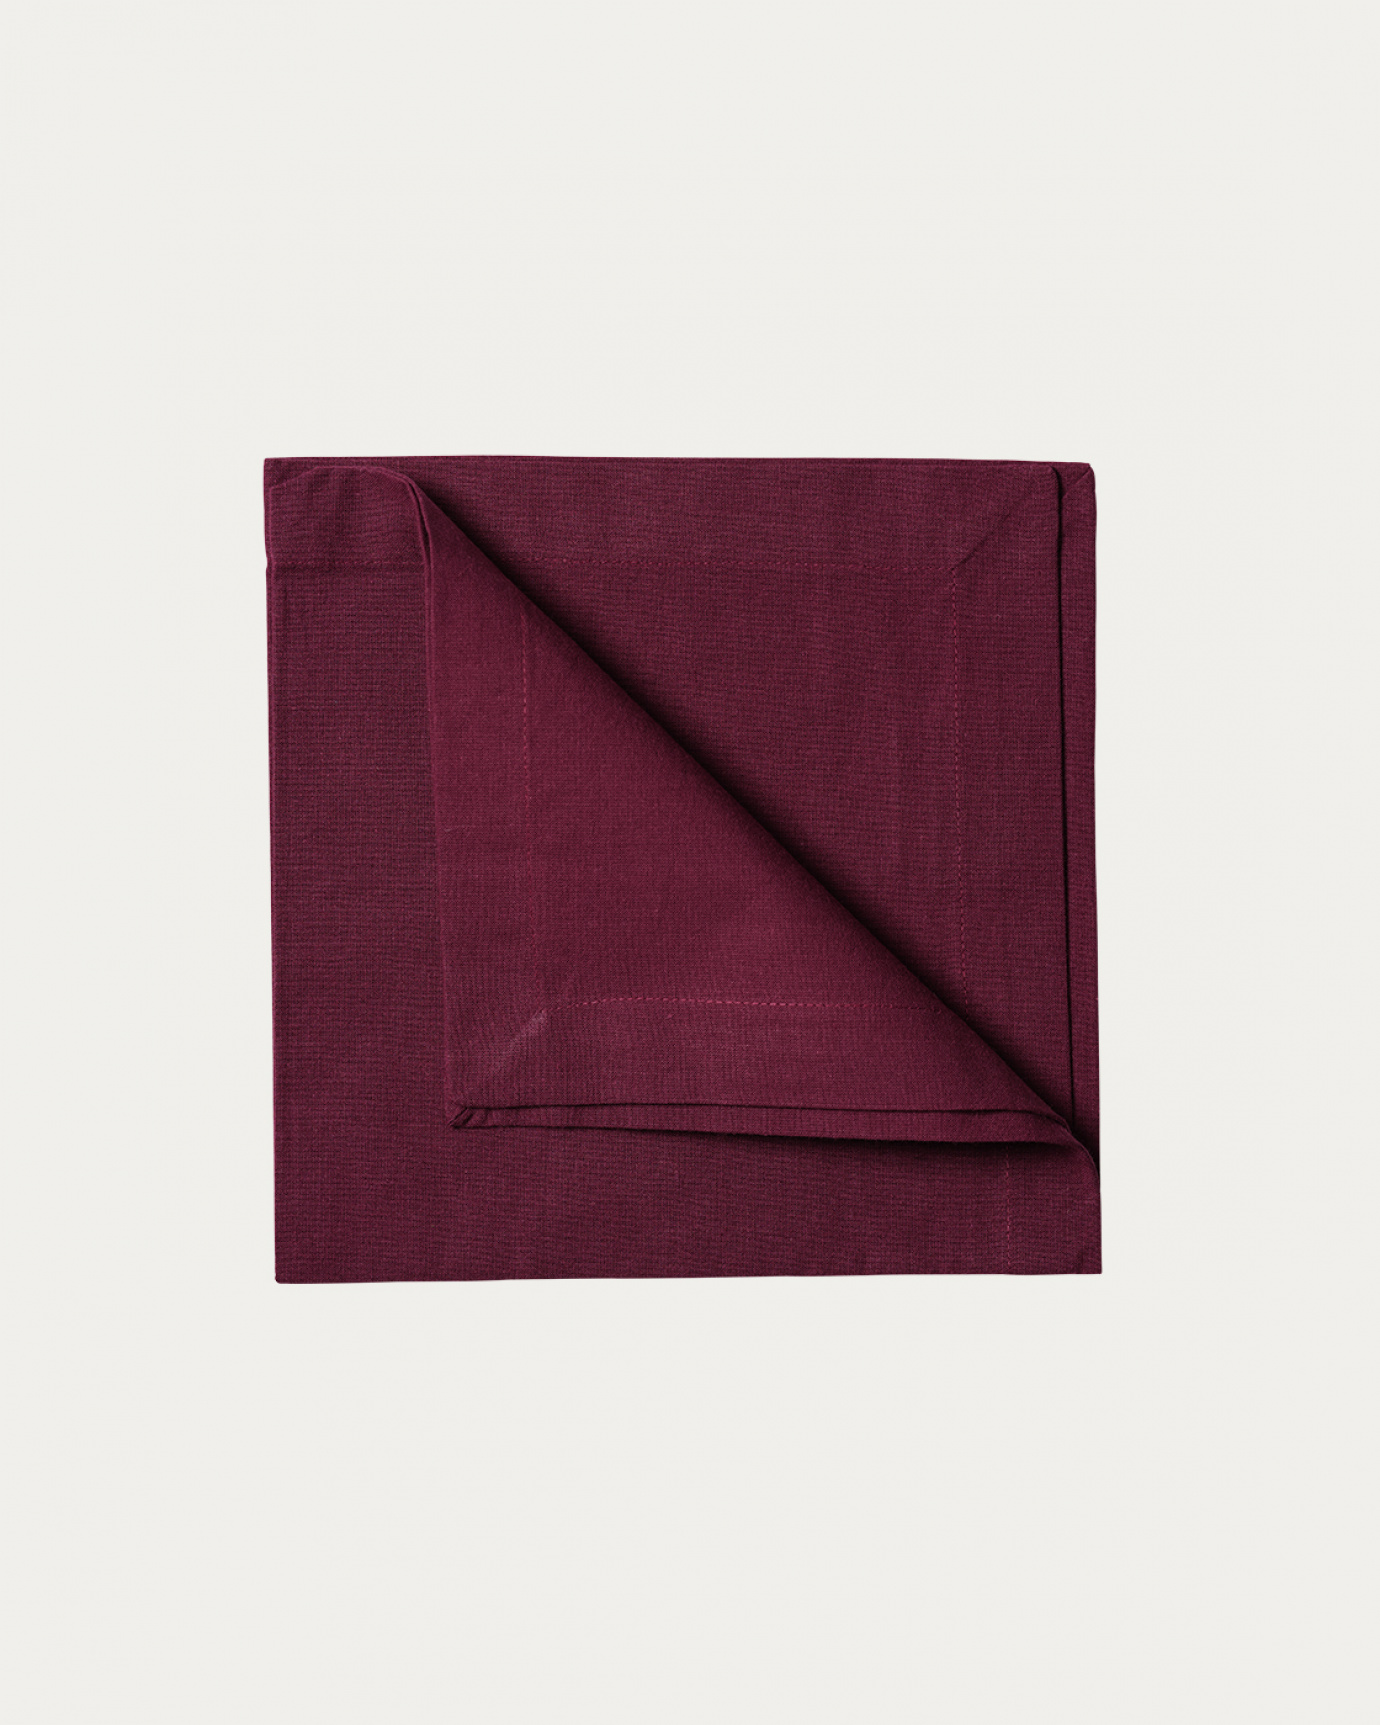 Image du produit serviette de table ROBERT aubergine en coton doux de LINUM DESIGN. Taille 45 x 45 cm et vendu en lot de 4.